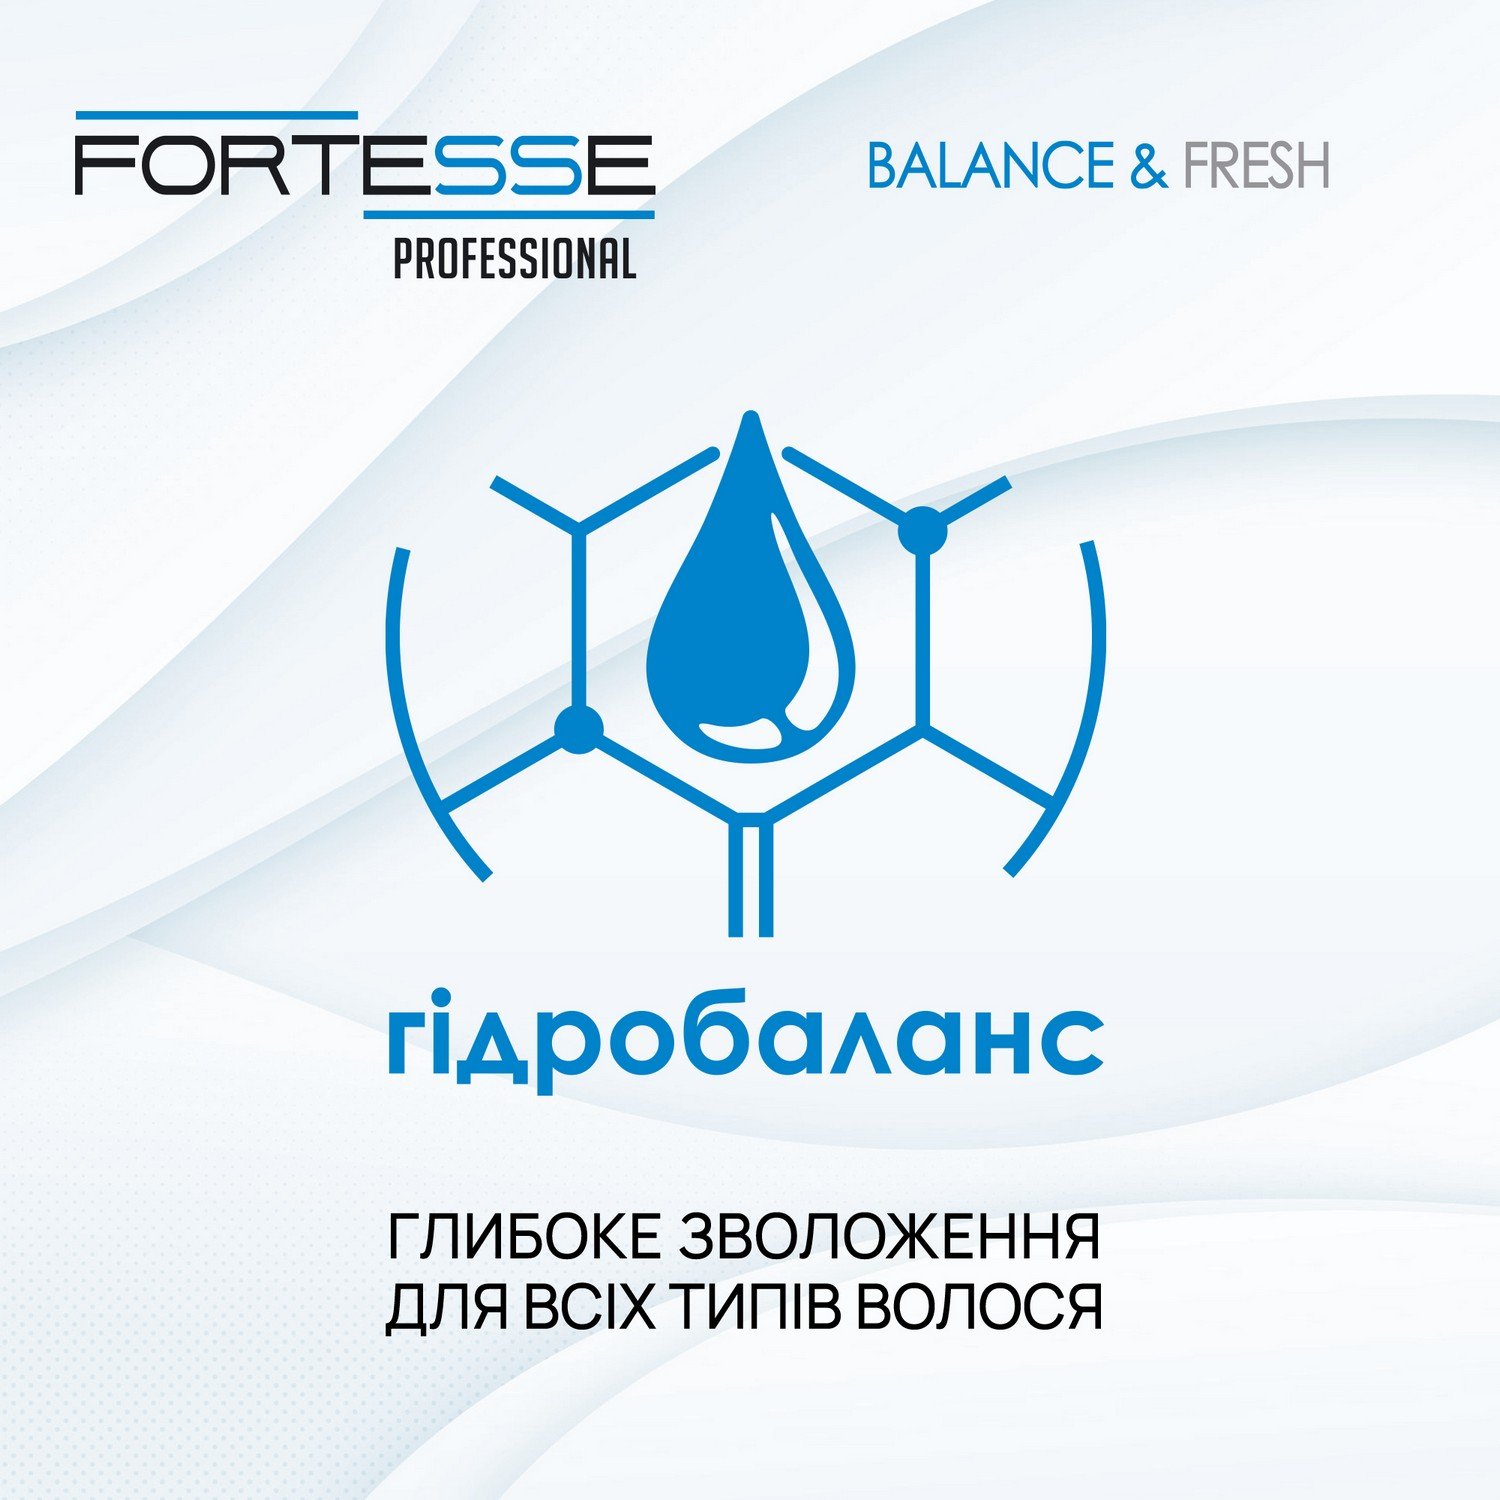 Шампунь Fortesse Professional Balance & Fresh, для всех типов волос, с дозатором, 1000 мл - фото 6